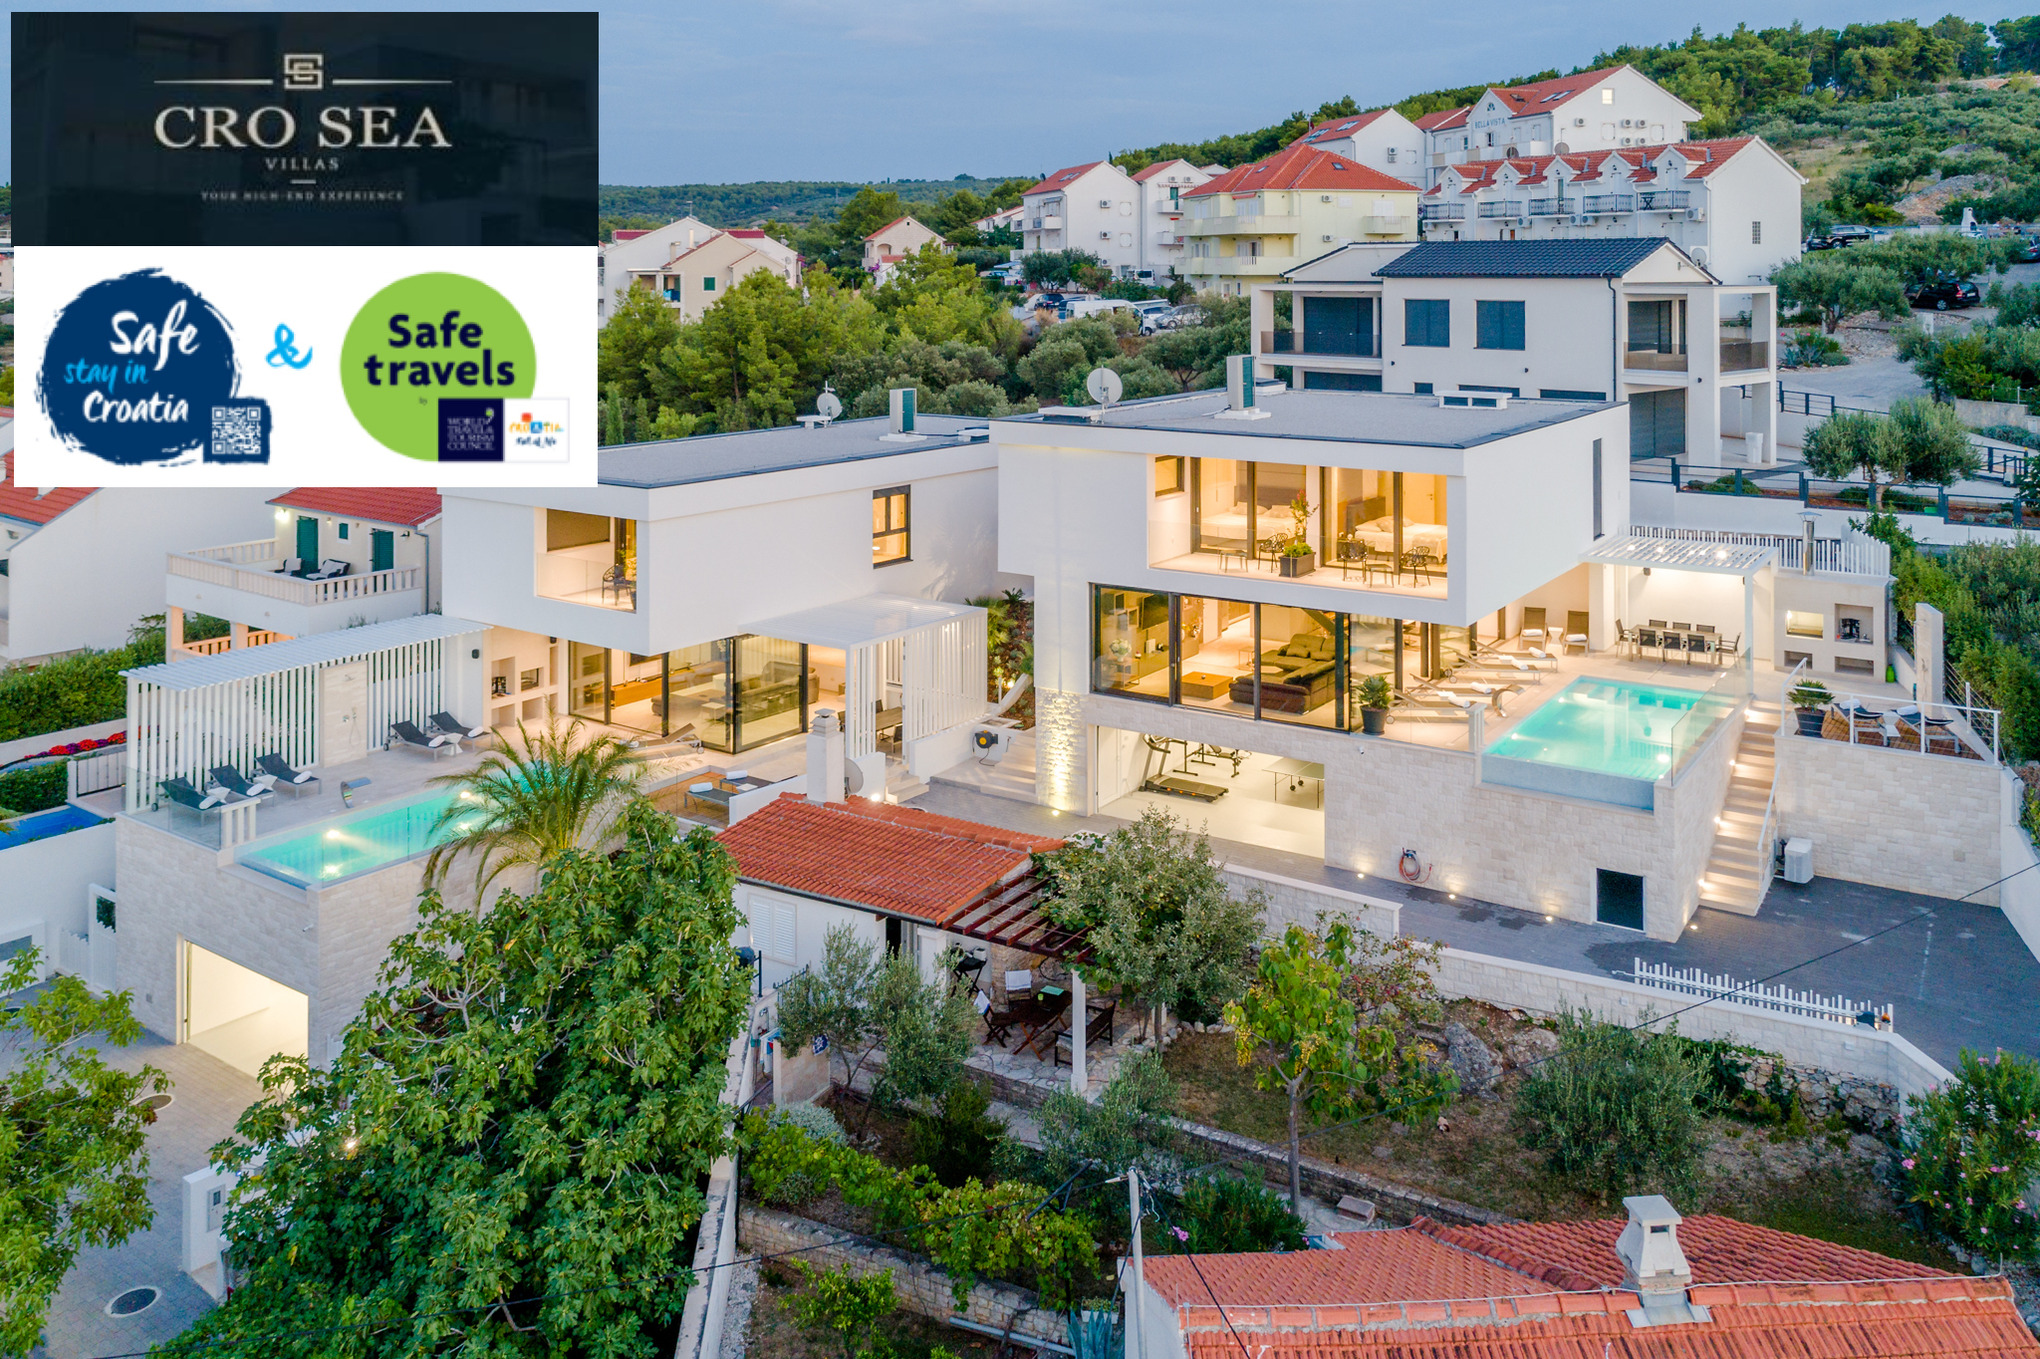 Luxury Villa Complex "Vitae & Pax" w Ferienhaus in Kroatien